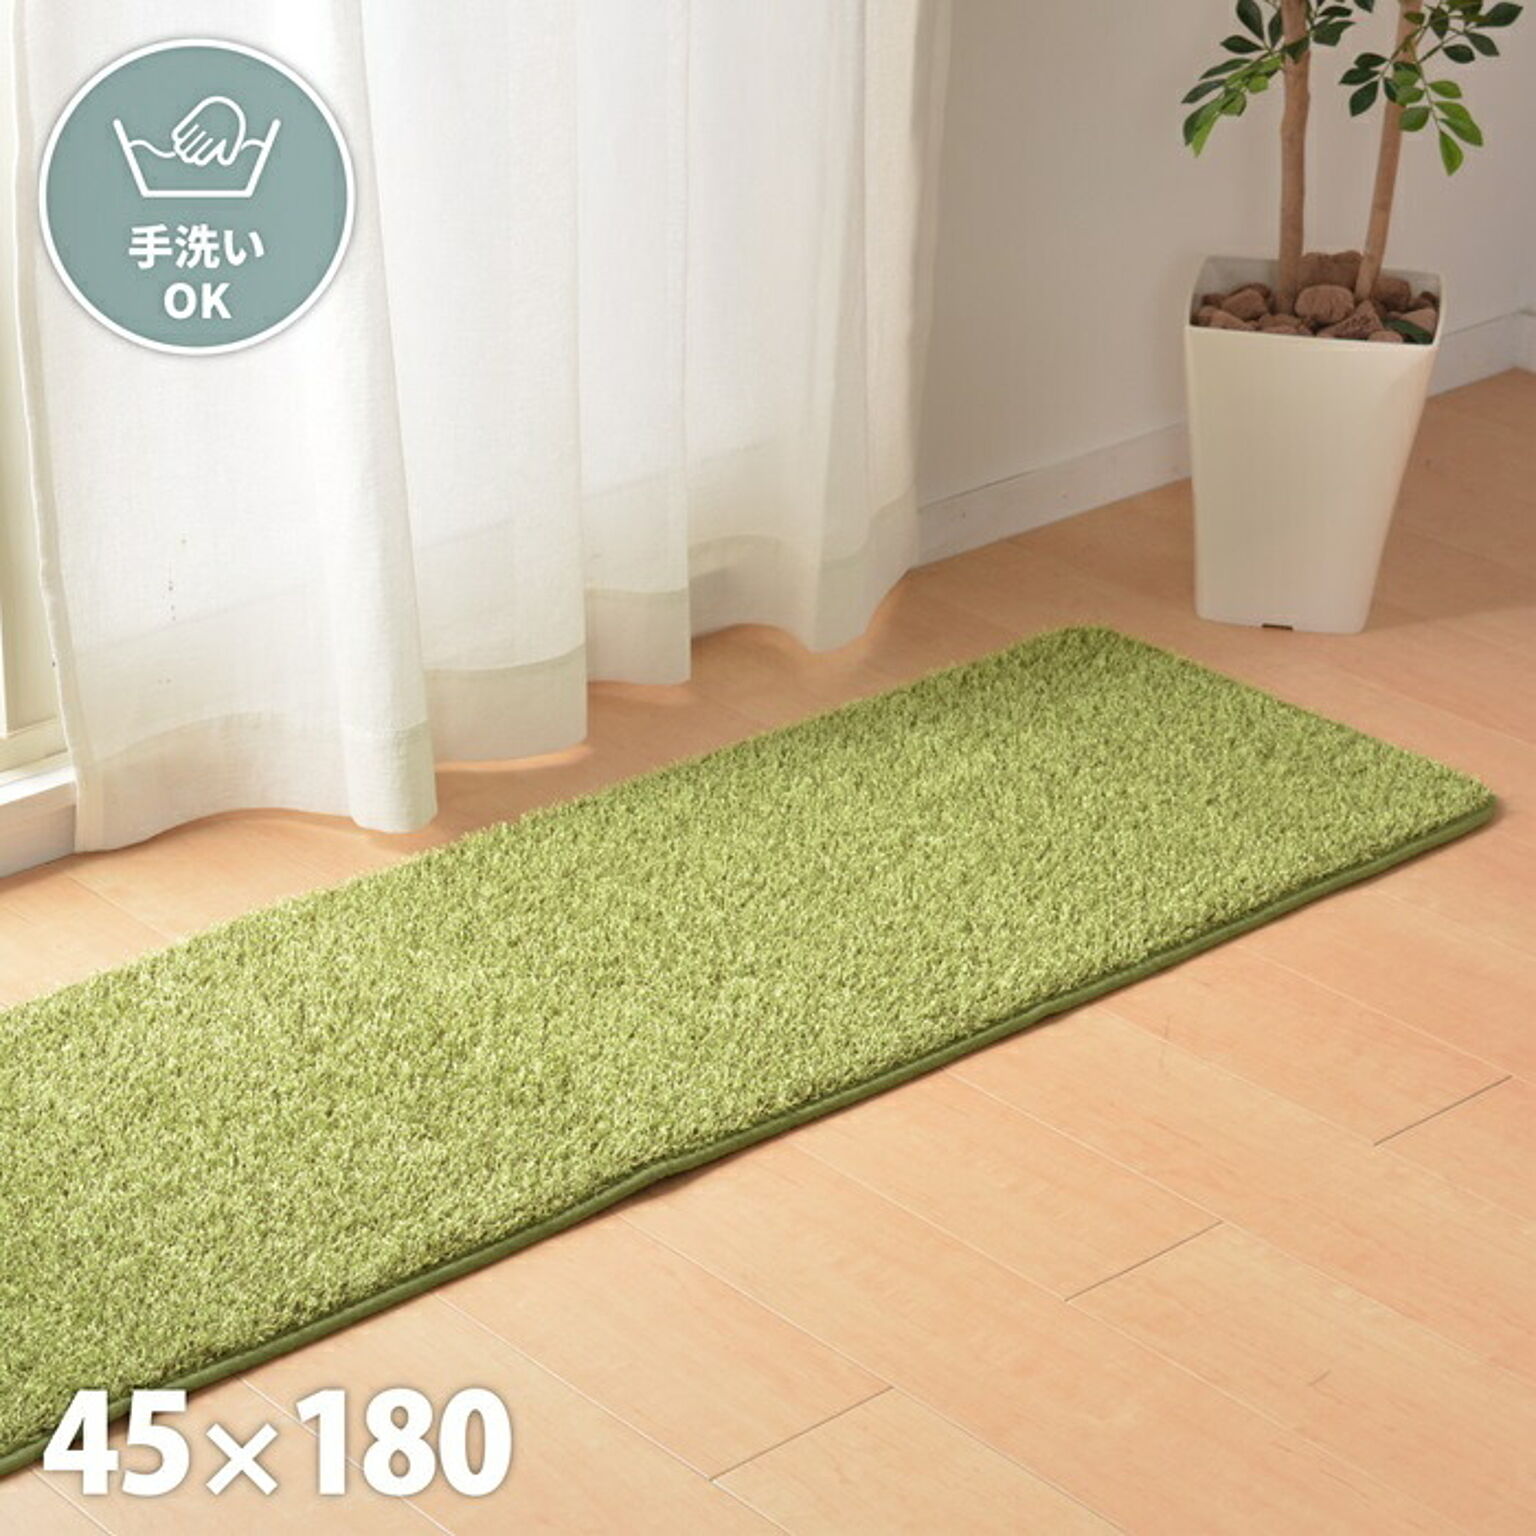 萩原 シーヴァ キッチンマット 贅沢な芝生マット ウレタン入り 約45×180cm